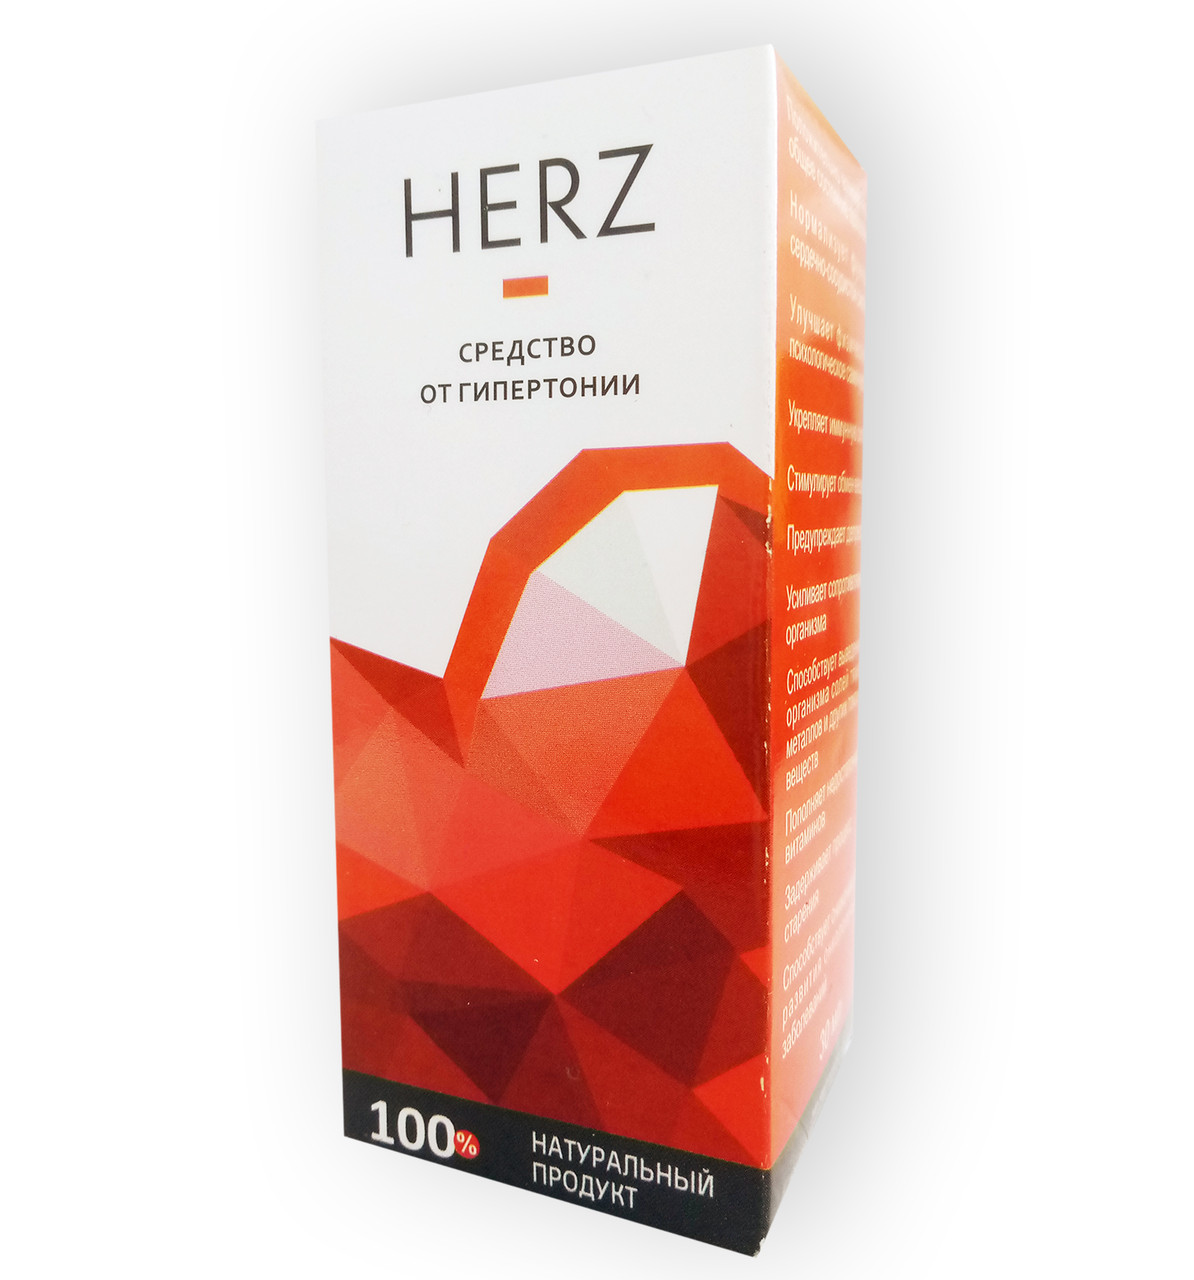 Herz - Засіб від гіпертонії (Герц)